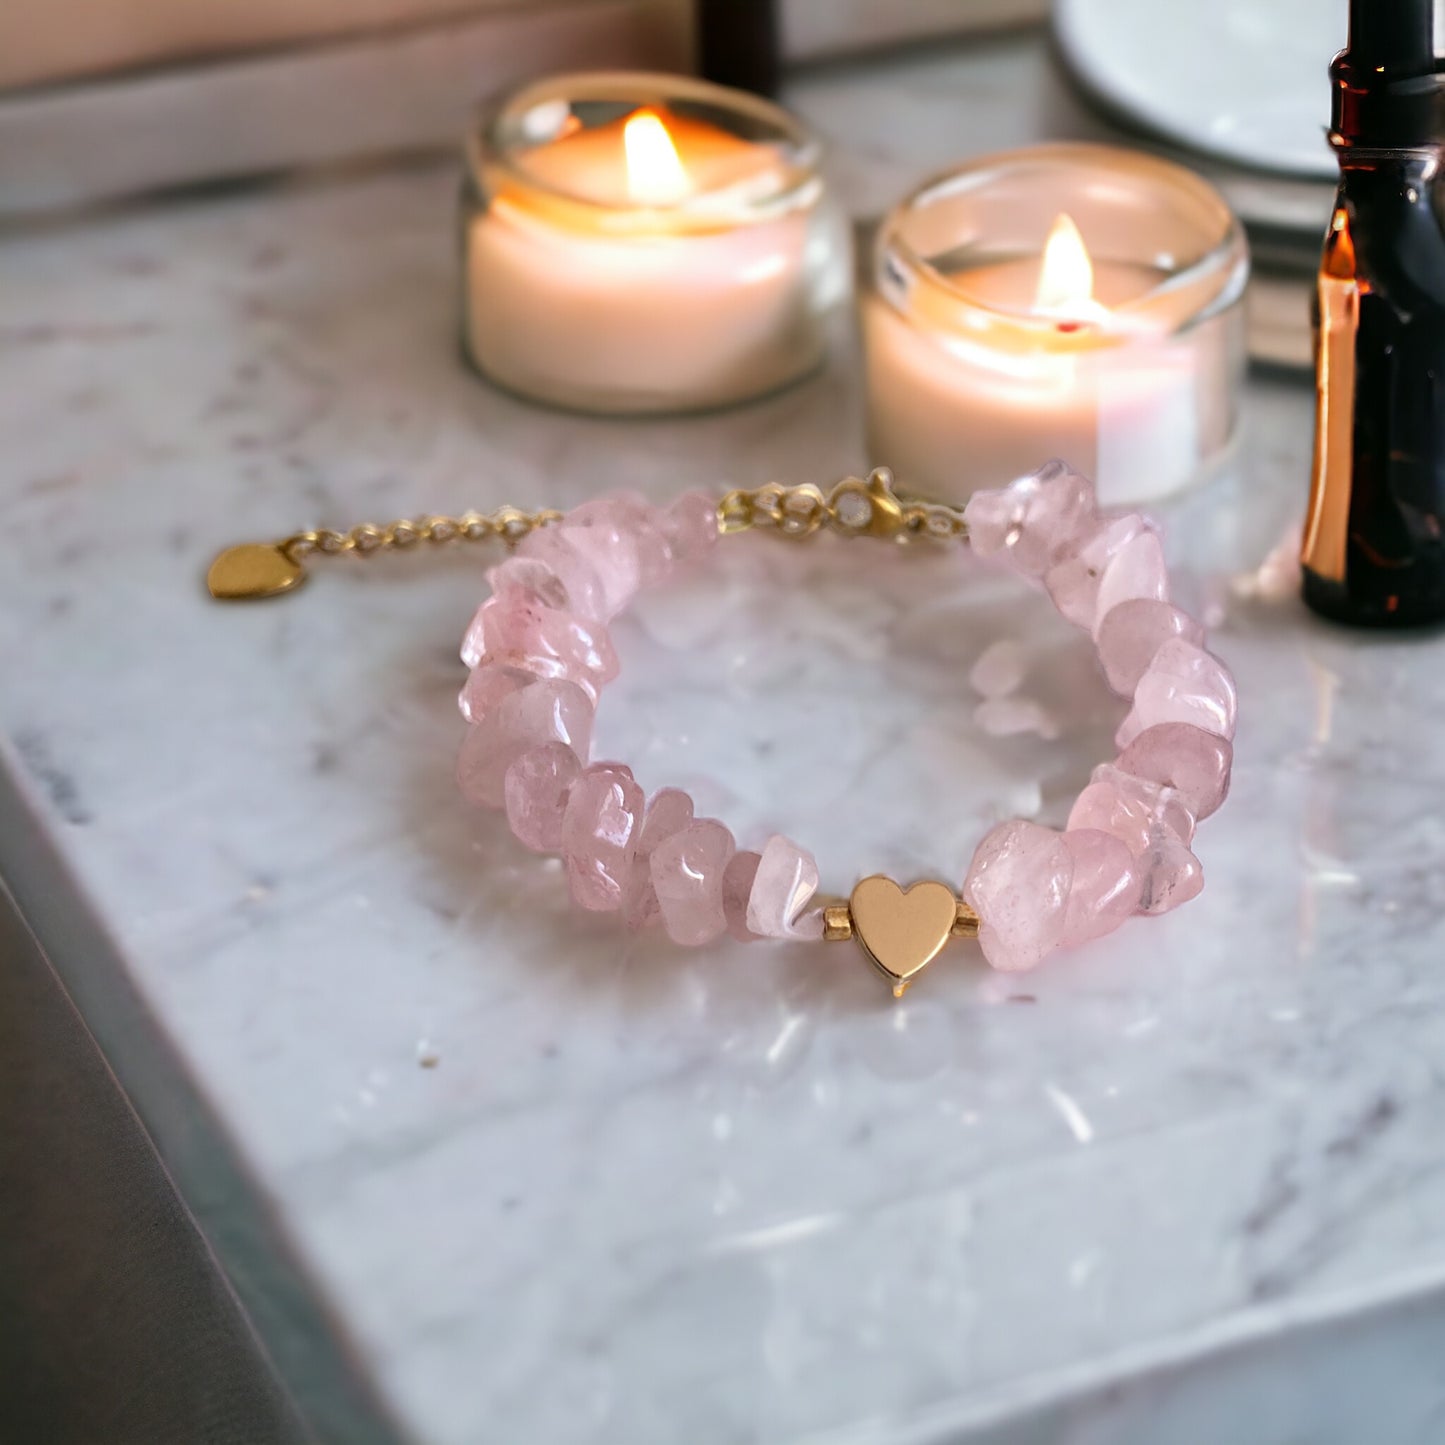 Bracelet précieux : Alizée , bracelet de quartz rose et hématite